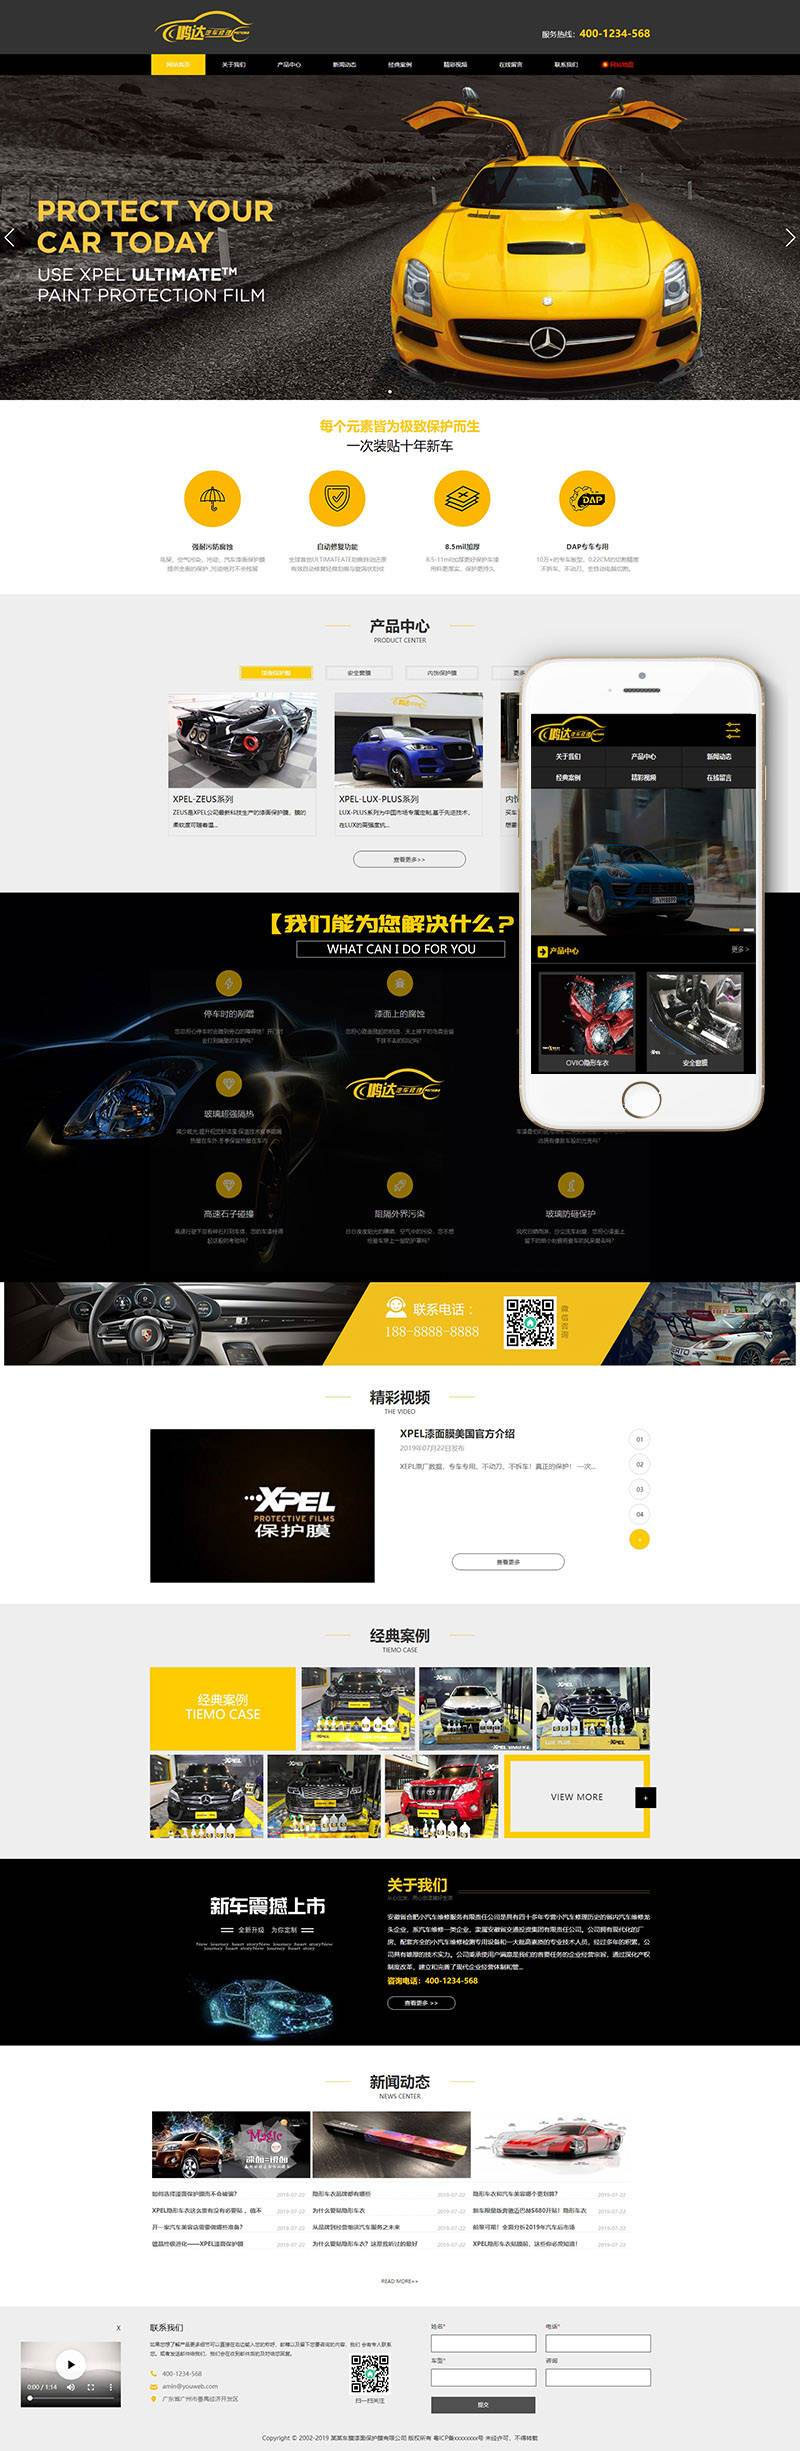 网站源码分享下载 织梦dedecms汽车美容维修贴膜公司网站模板(带手机移动端)